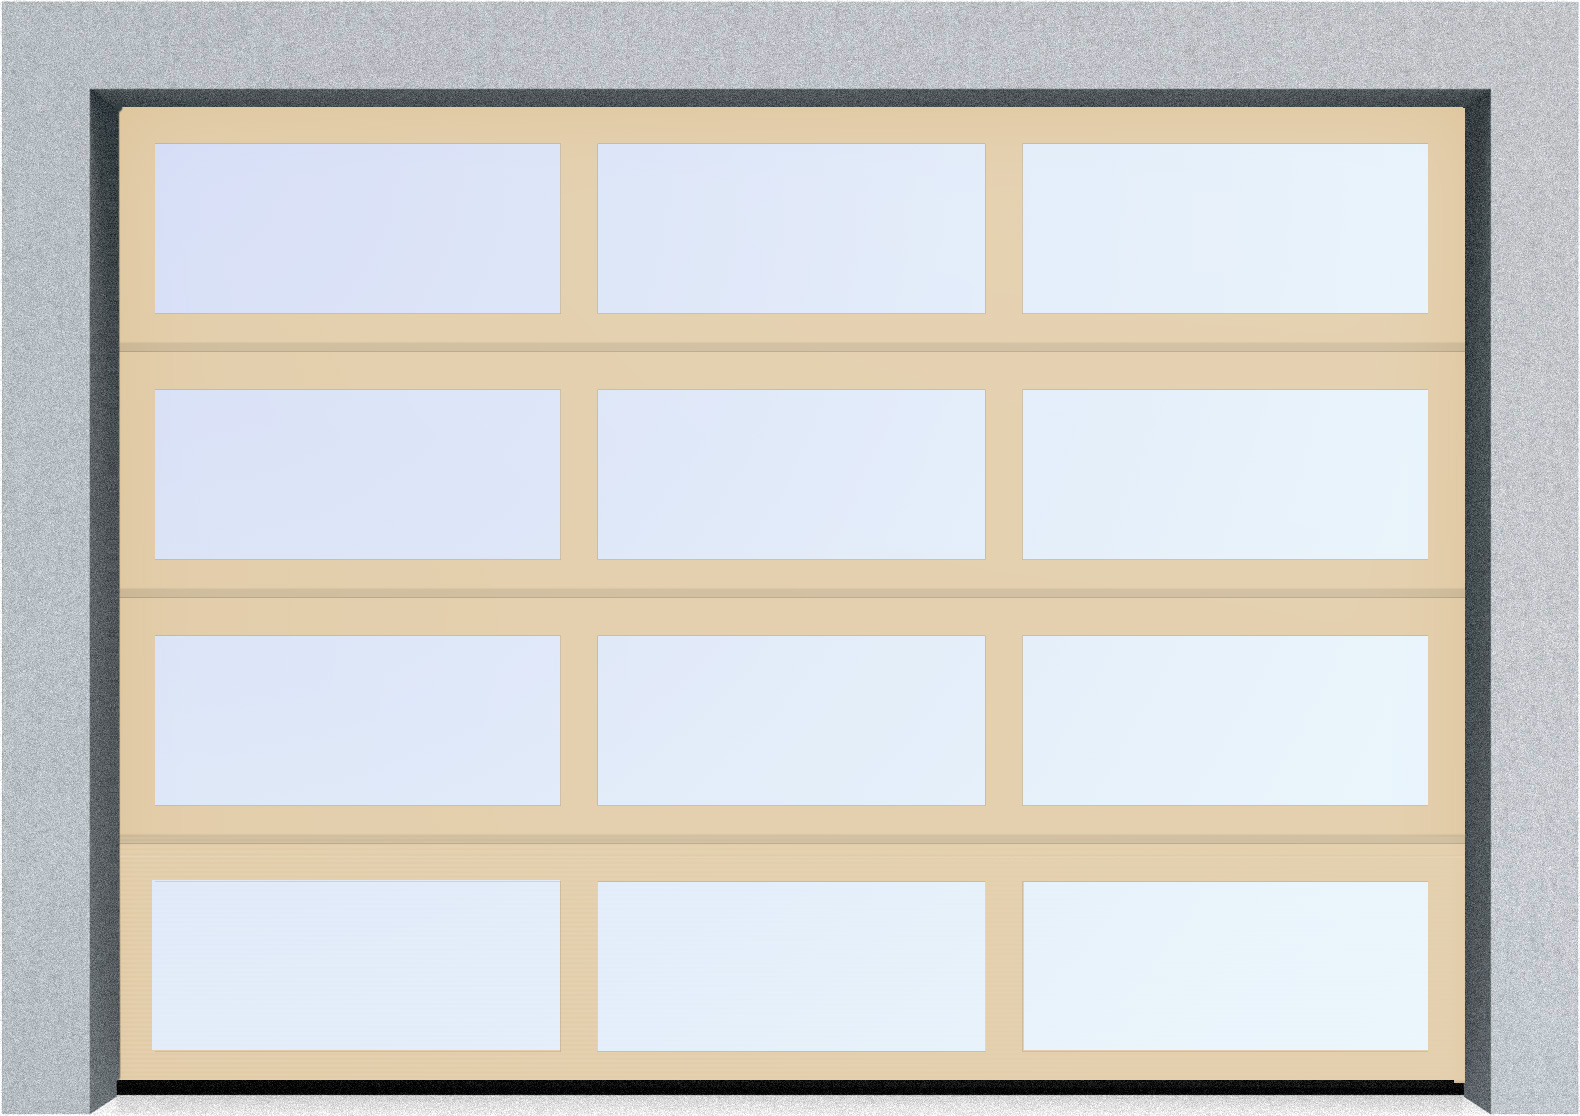  Секционные панорамные ворота серии AluTrend (АЛП) 5000х4500 нижняя панель стандартные цвета, фото 1 